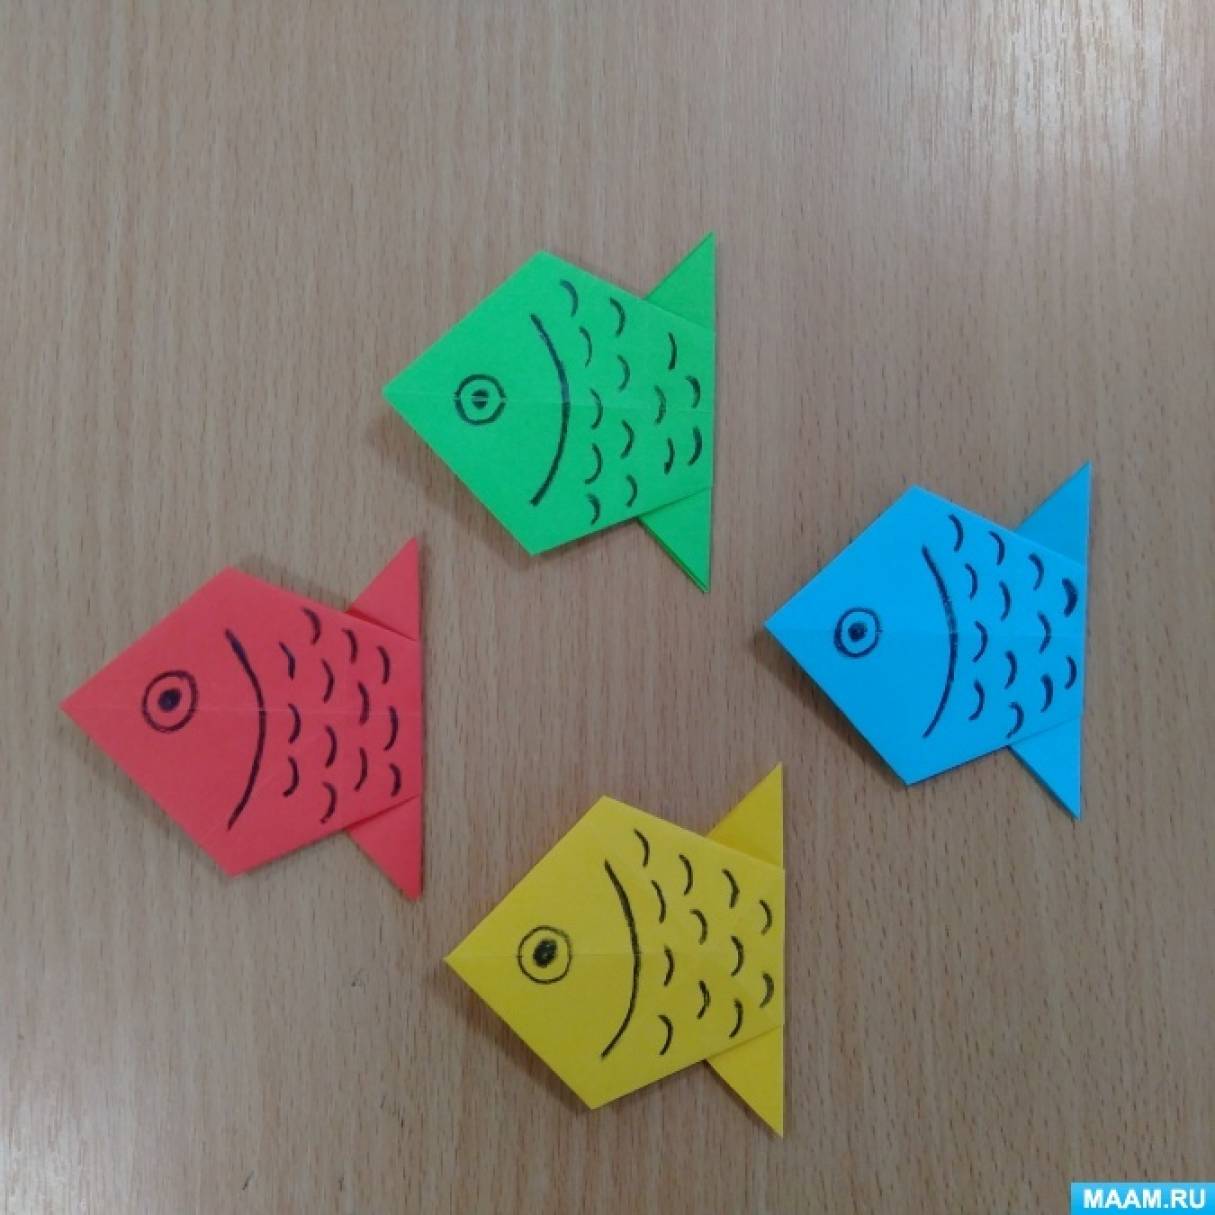 Мастер-класс по оригами «Рыбка» для детей от 5 лет